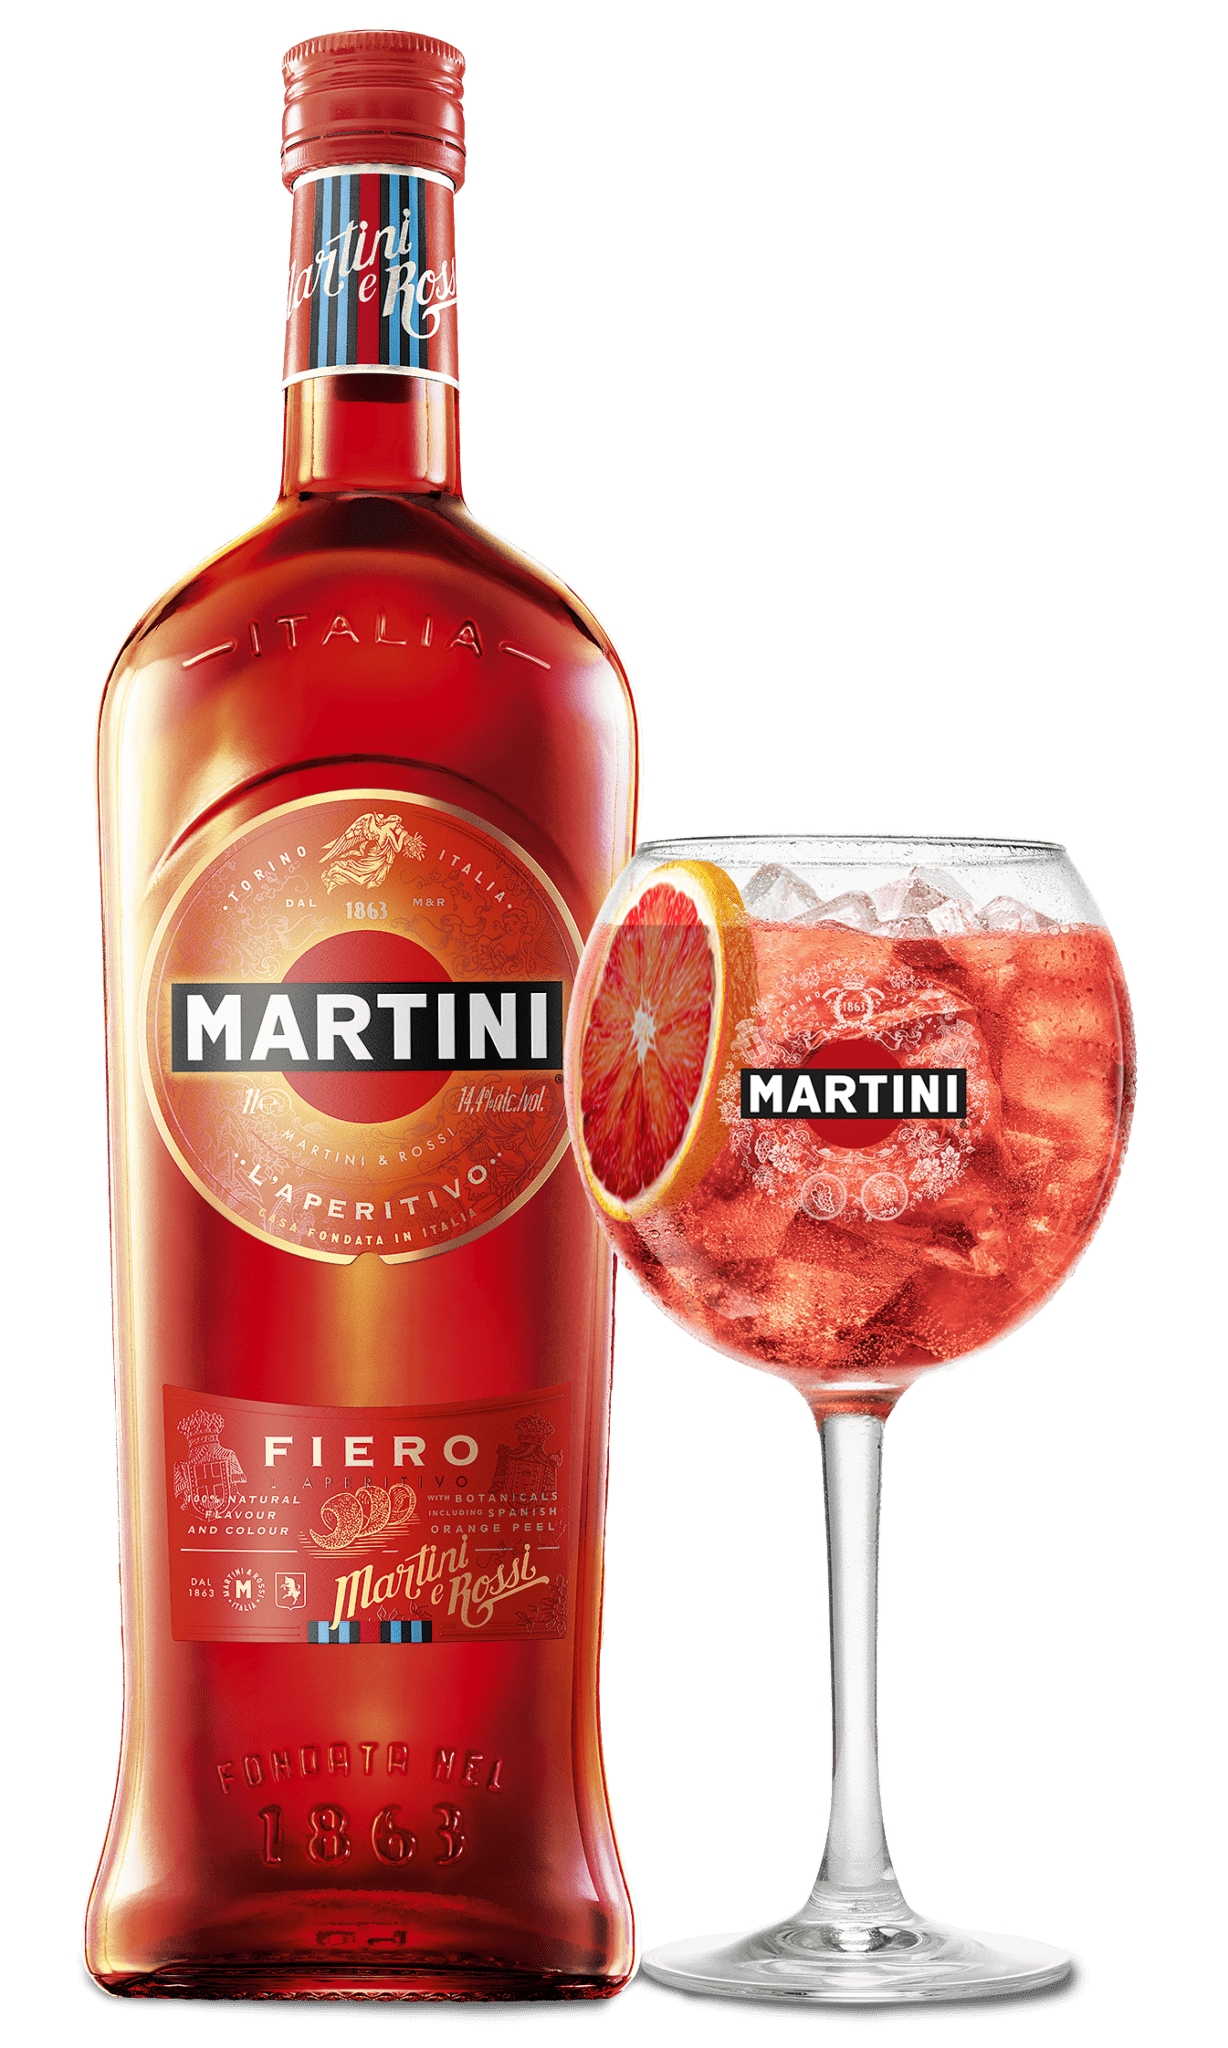 Martini Fiero offers a blend of white wines and botanicals including Murcia orange peel, artemisia absinthium and artemisia pontica